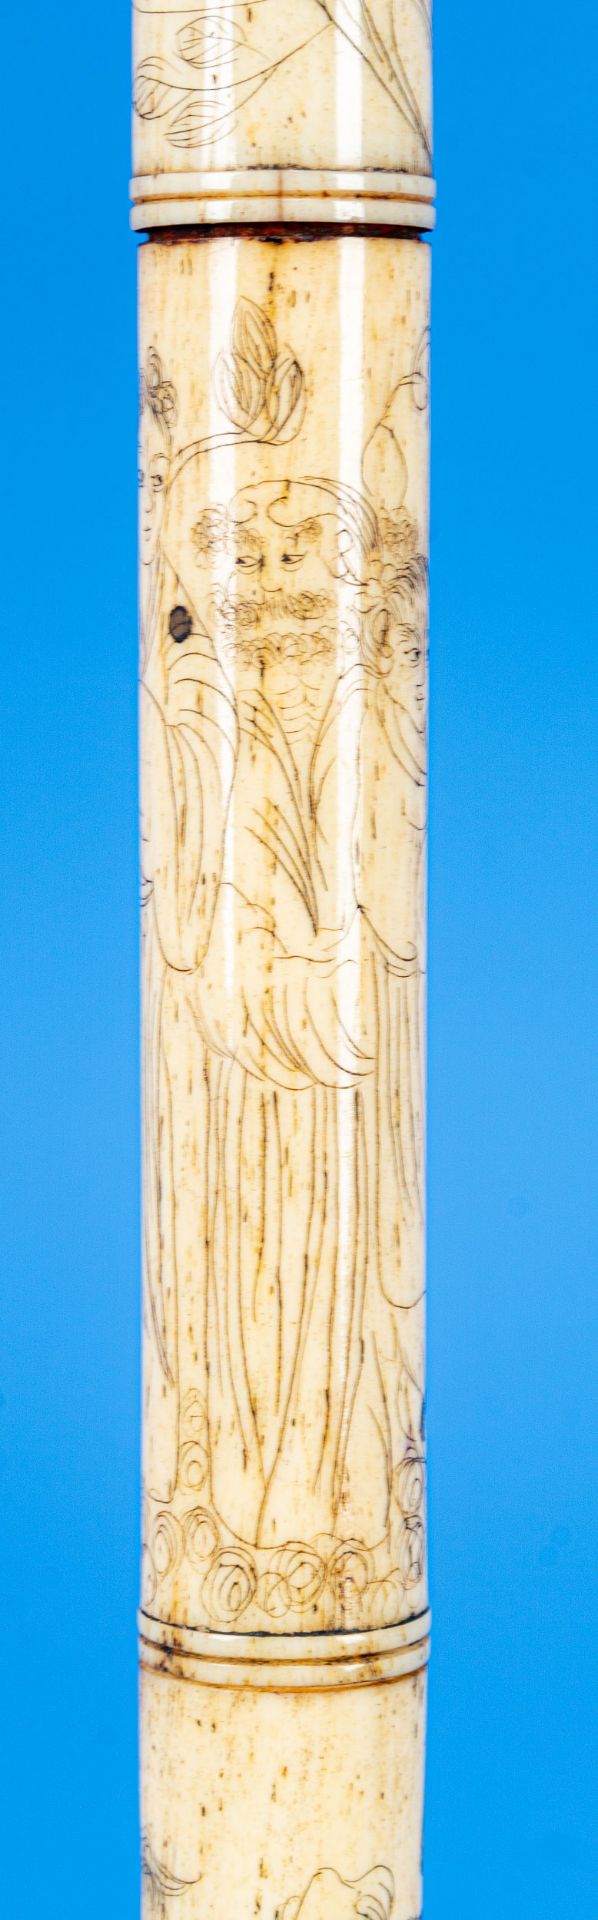 Antike Tabakspfeife/Opiumpfeife, aufwändig gravierter Knochenkorpus in Bambusoptik, versilberter Zi - Bild 8 aus 17